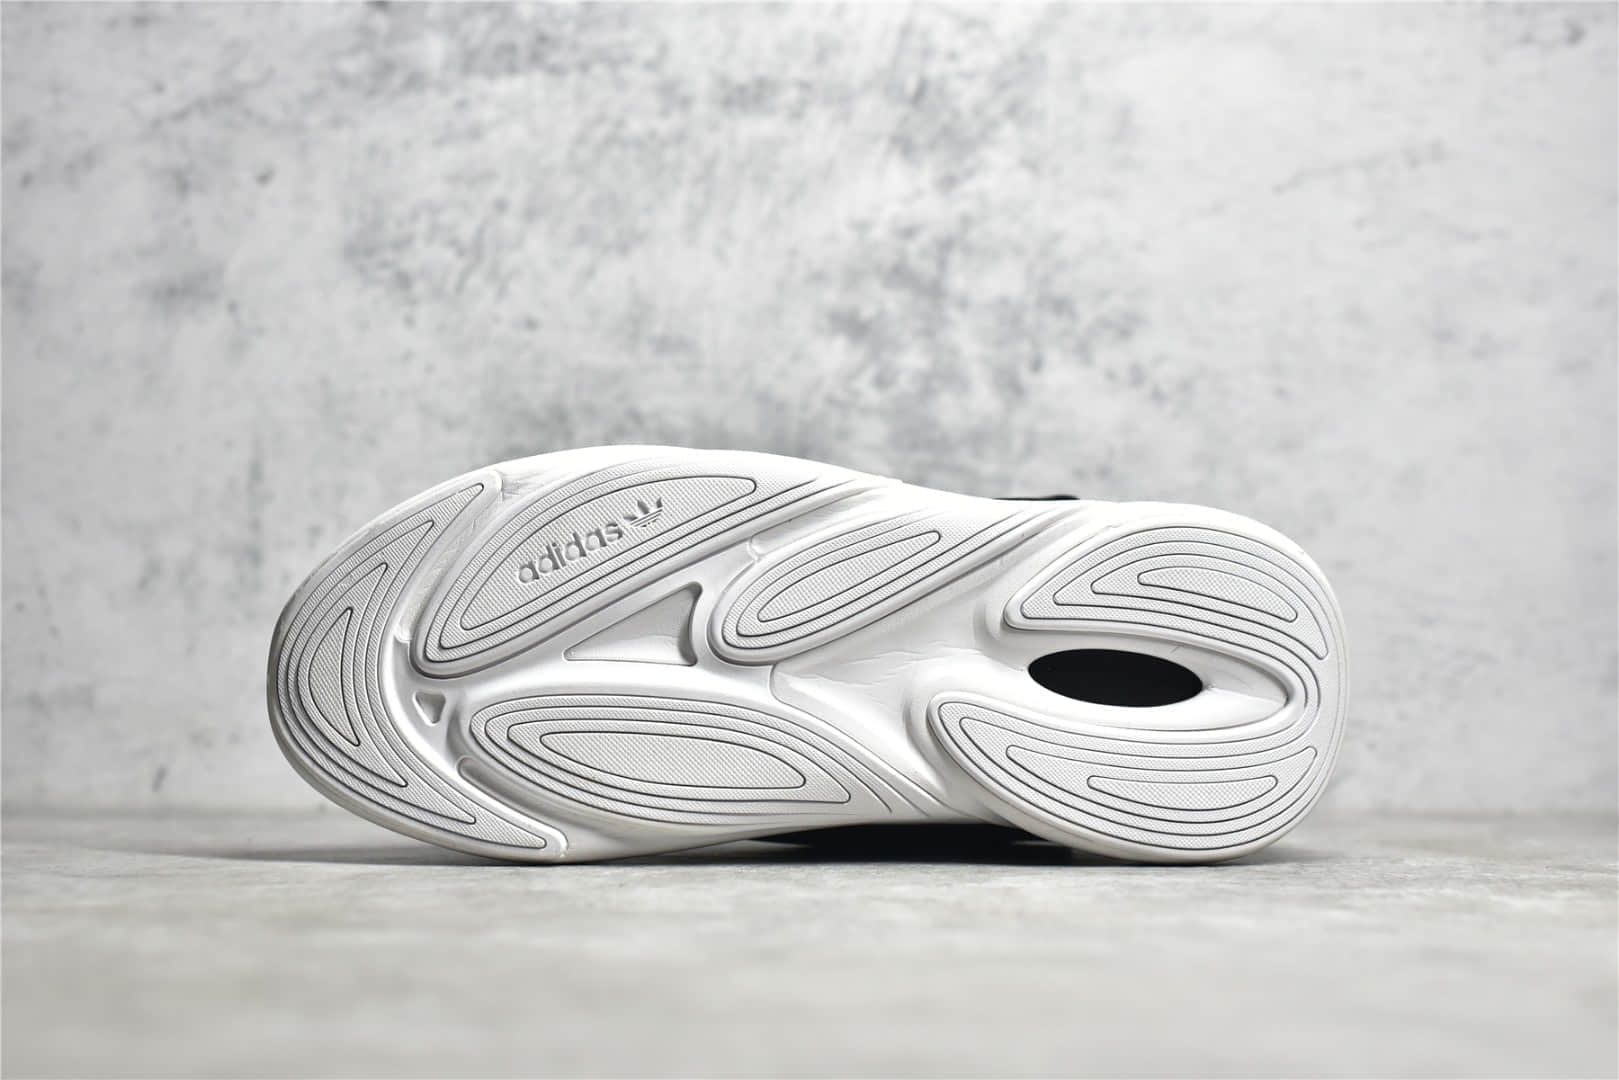 公司级版本阿迪达斯奥泽利亚黑色跑鞋 adidas Originals Ozelia 阿迪达斯缓震复古跑鞋 货号：GW8114-潮流者之家